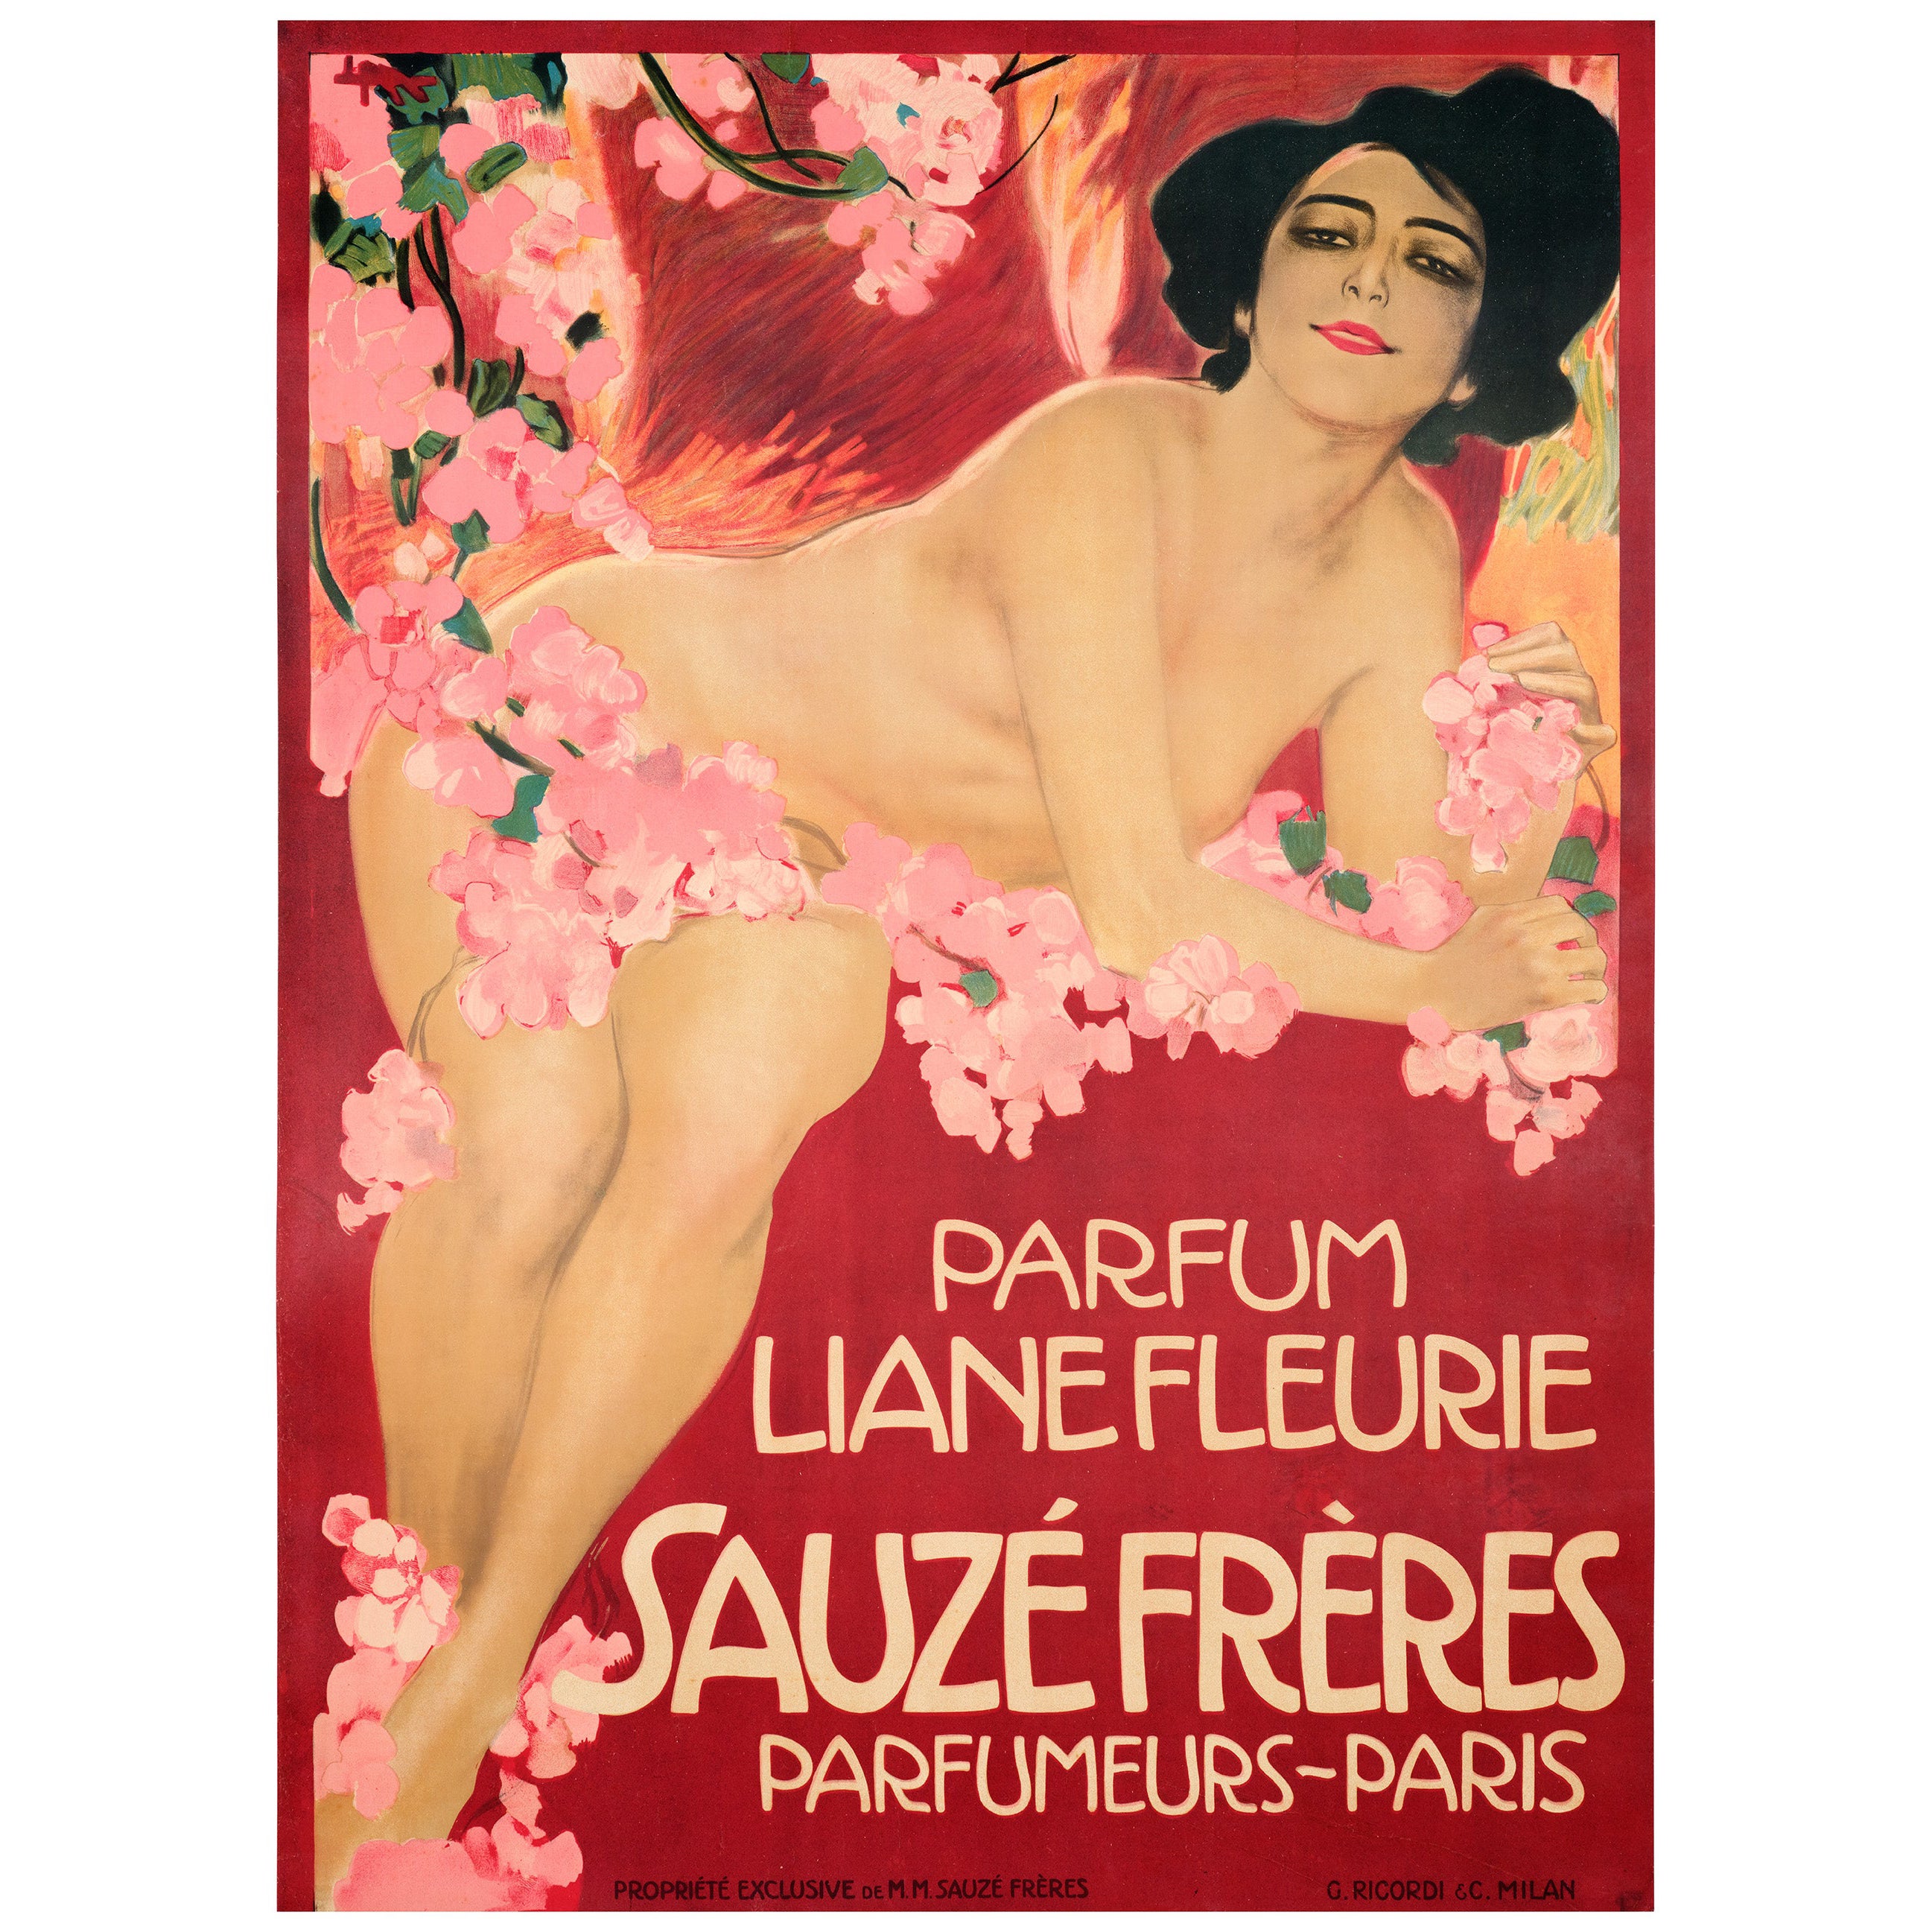 Metlicovitz, Original-Jugendstil-Plakat, Liane Fleurie Sauze Parfüm Paris 1910